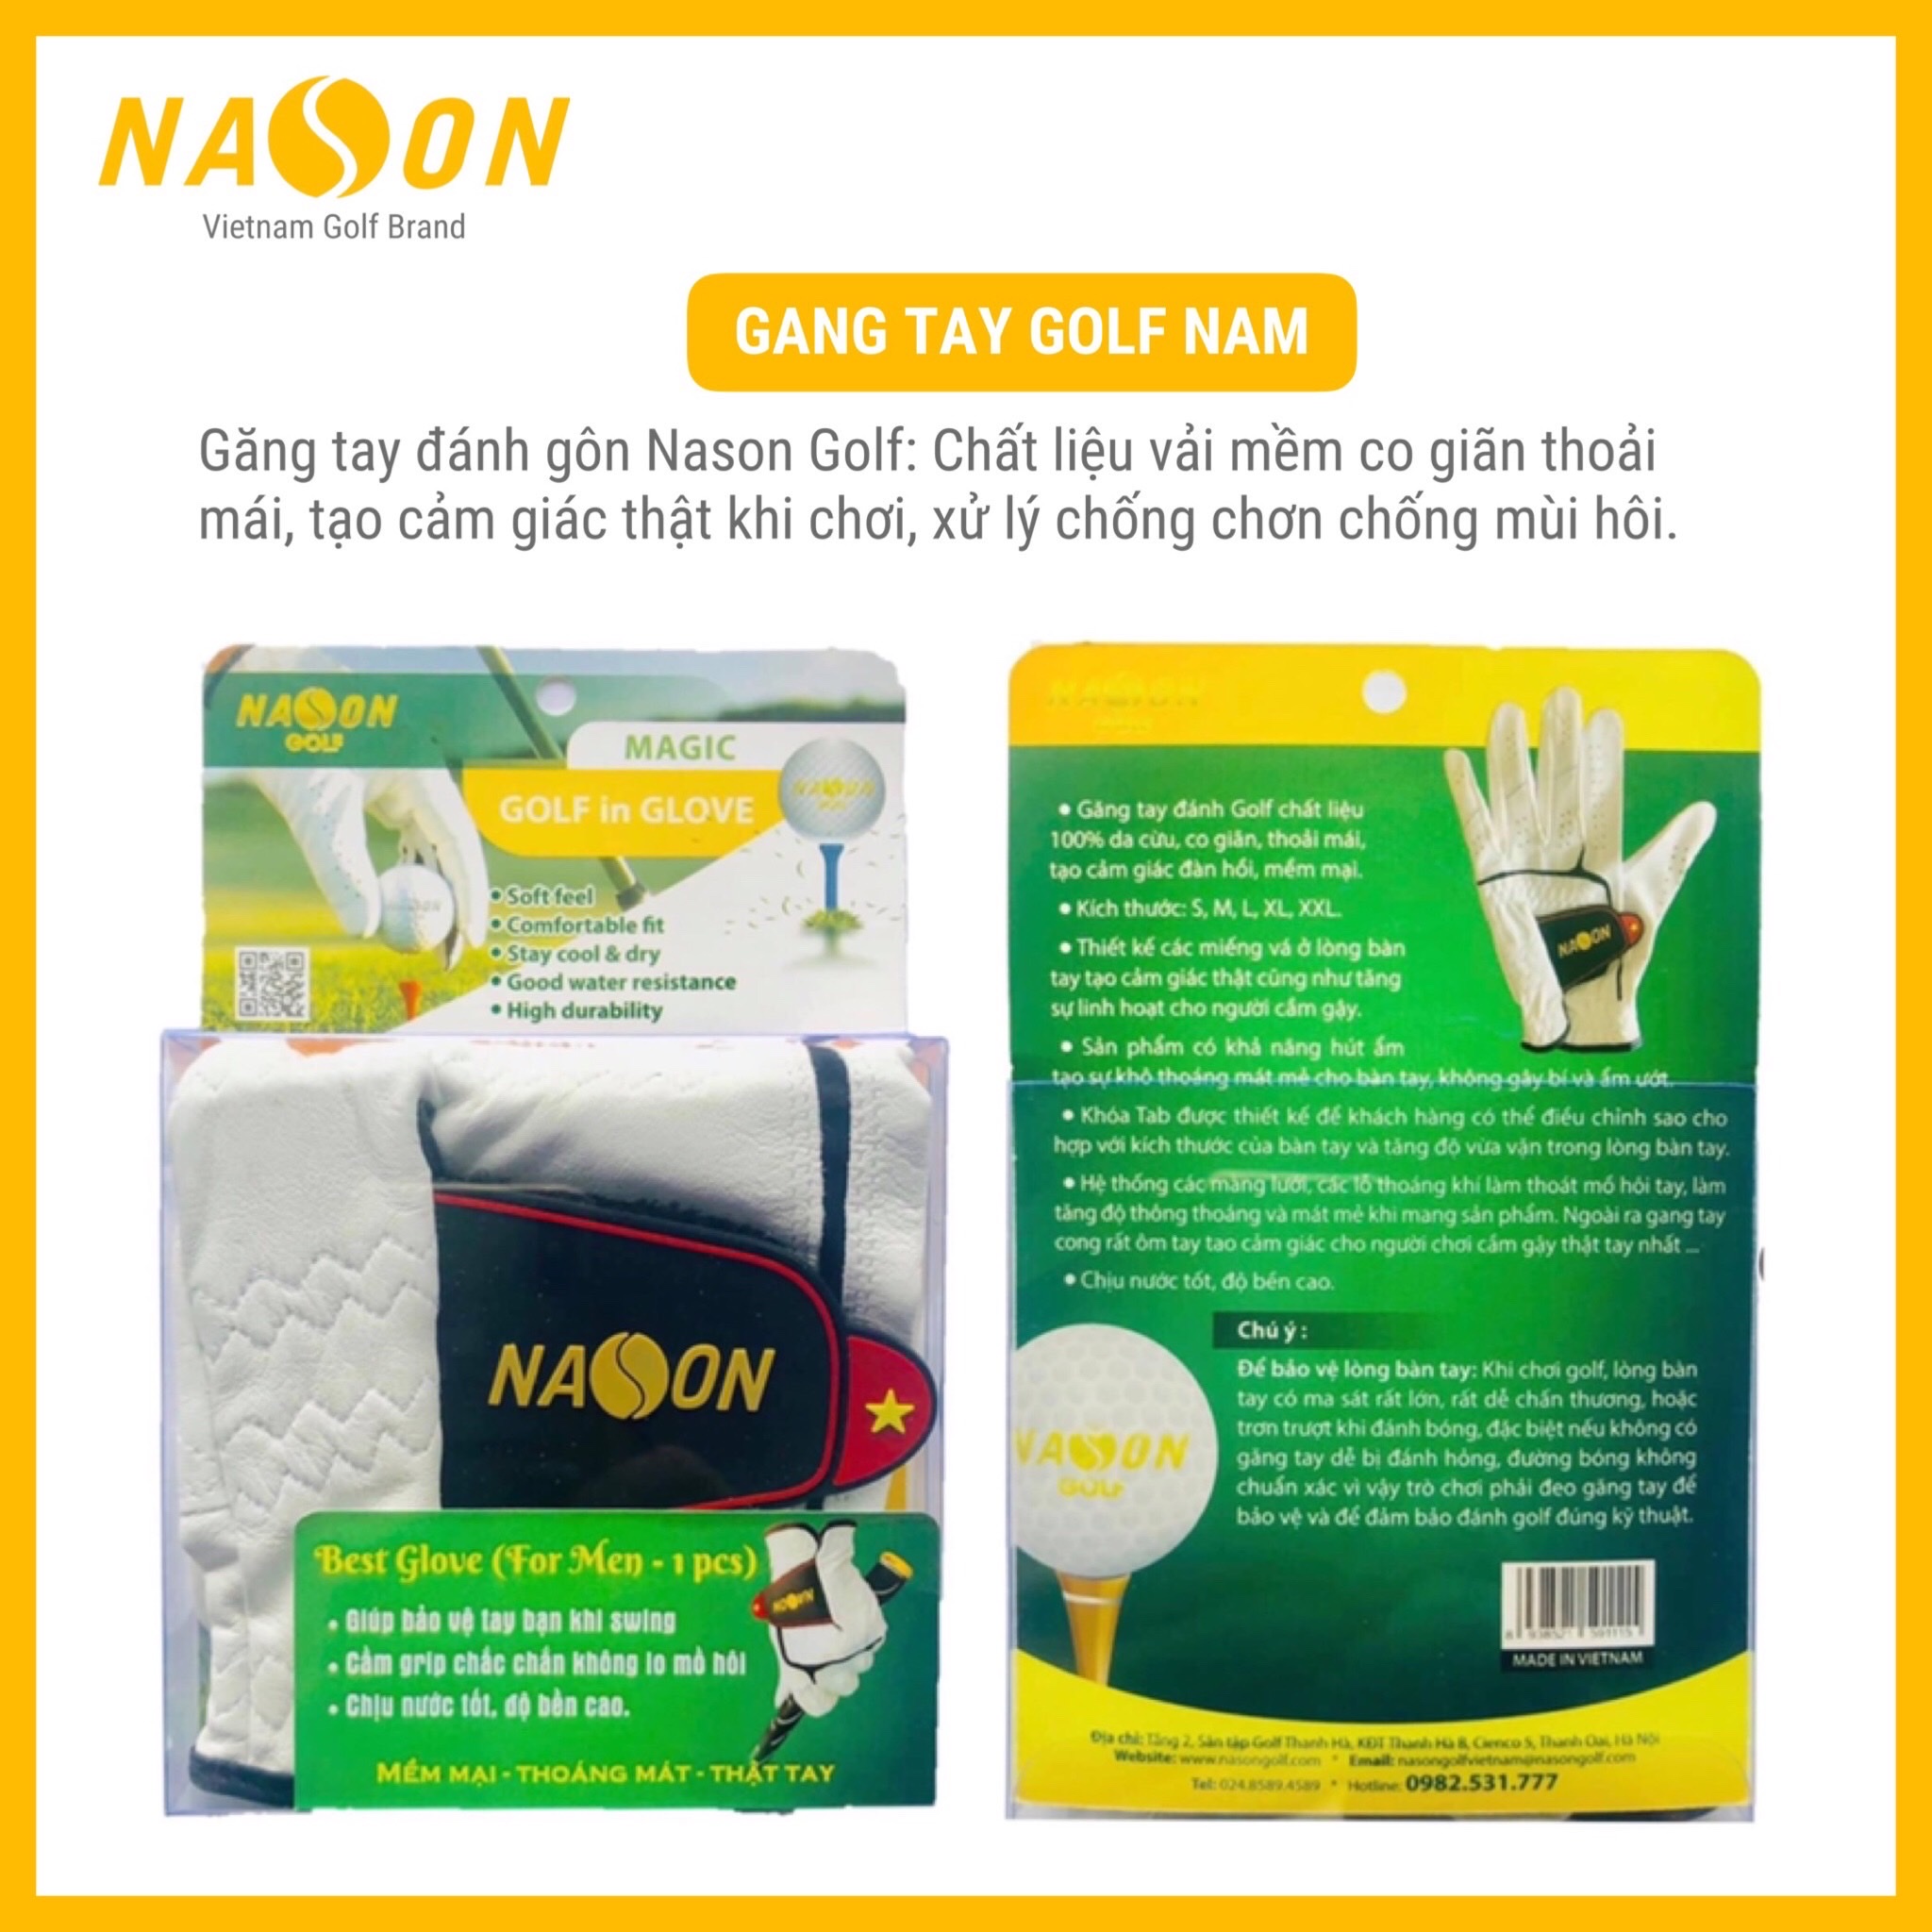 GANG TAY CHƠI GOLF NAM NASON